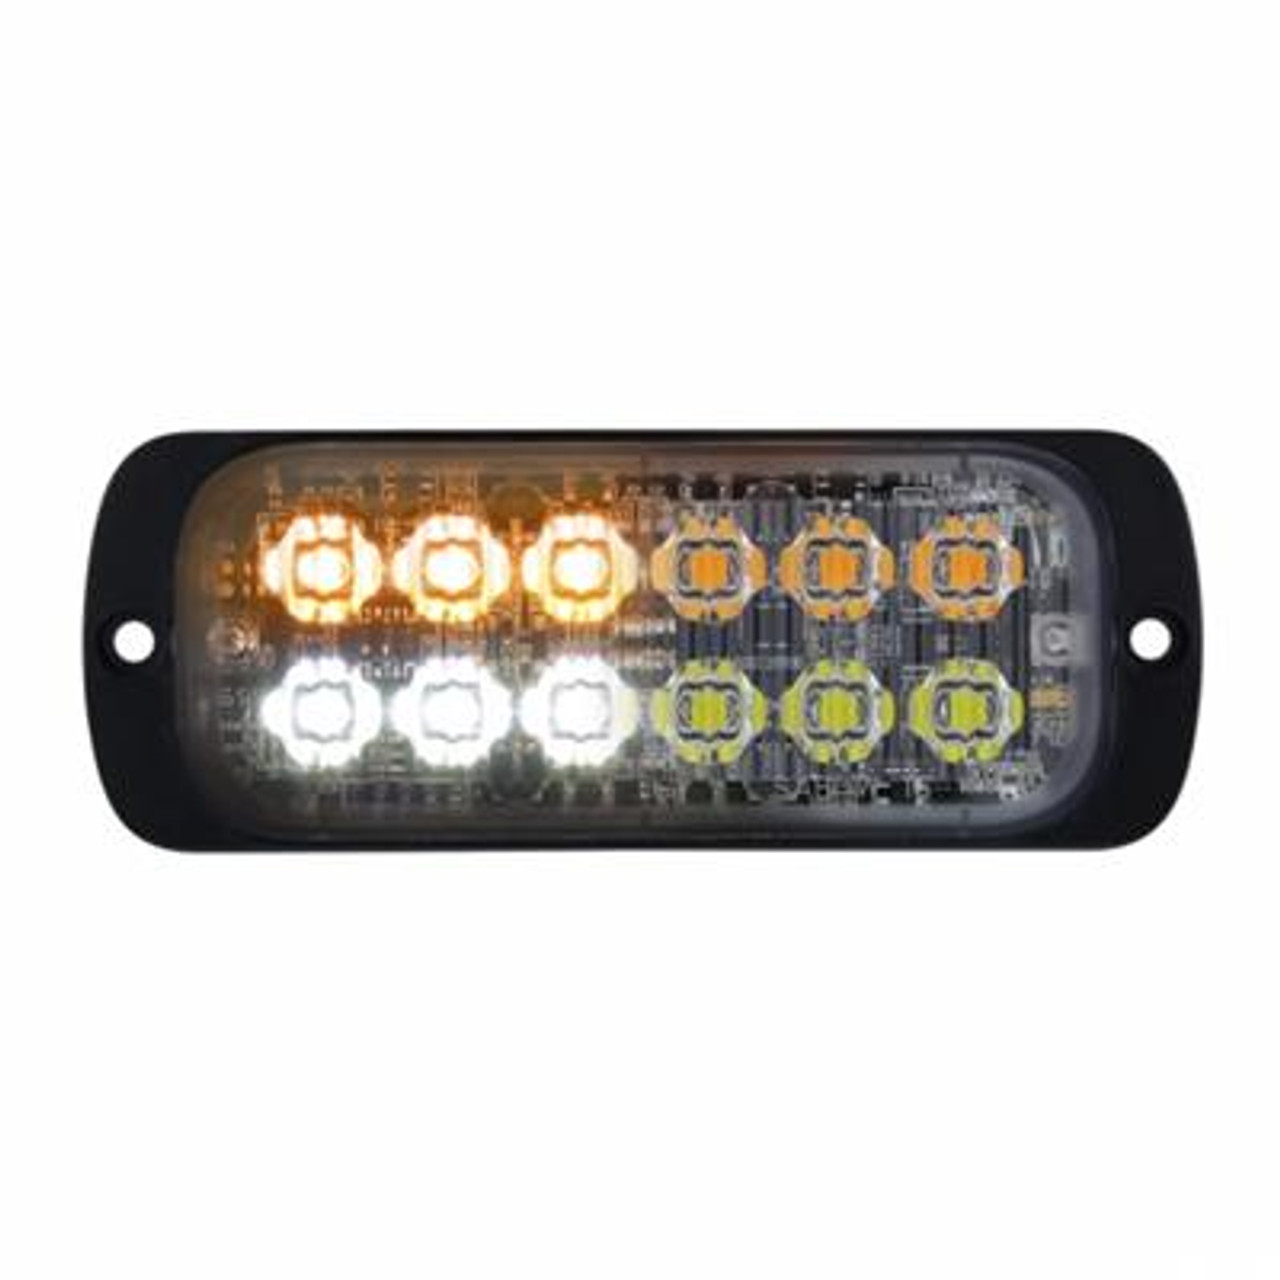 12 High Power LED Super Thin Warning Light - Amber LED & White LED (Bulk)